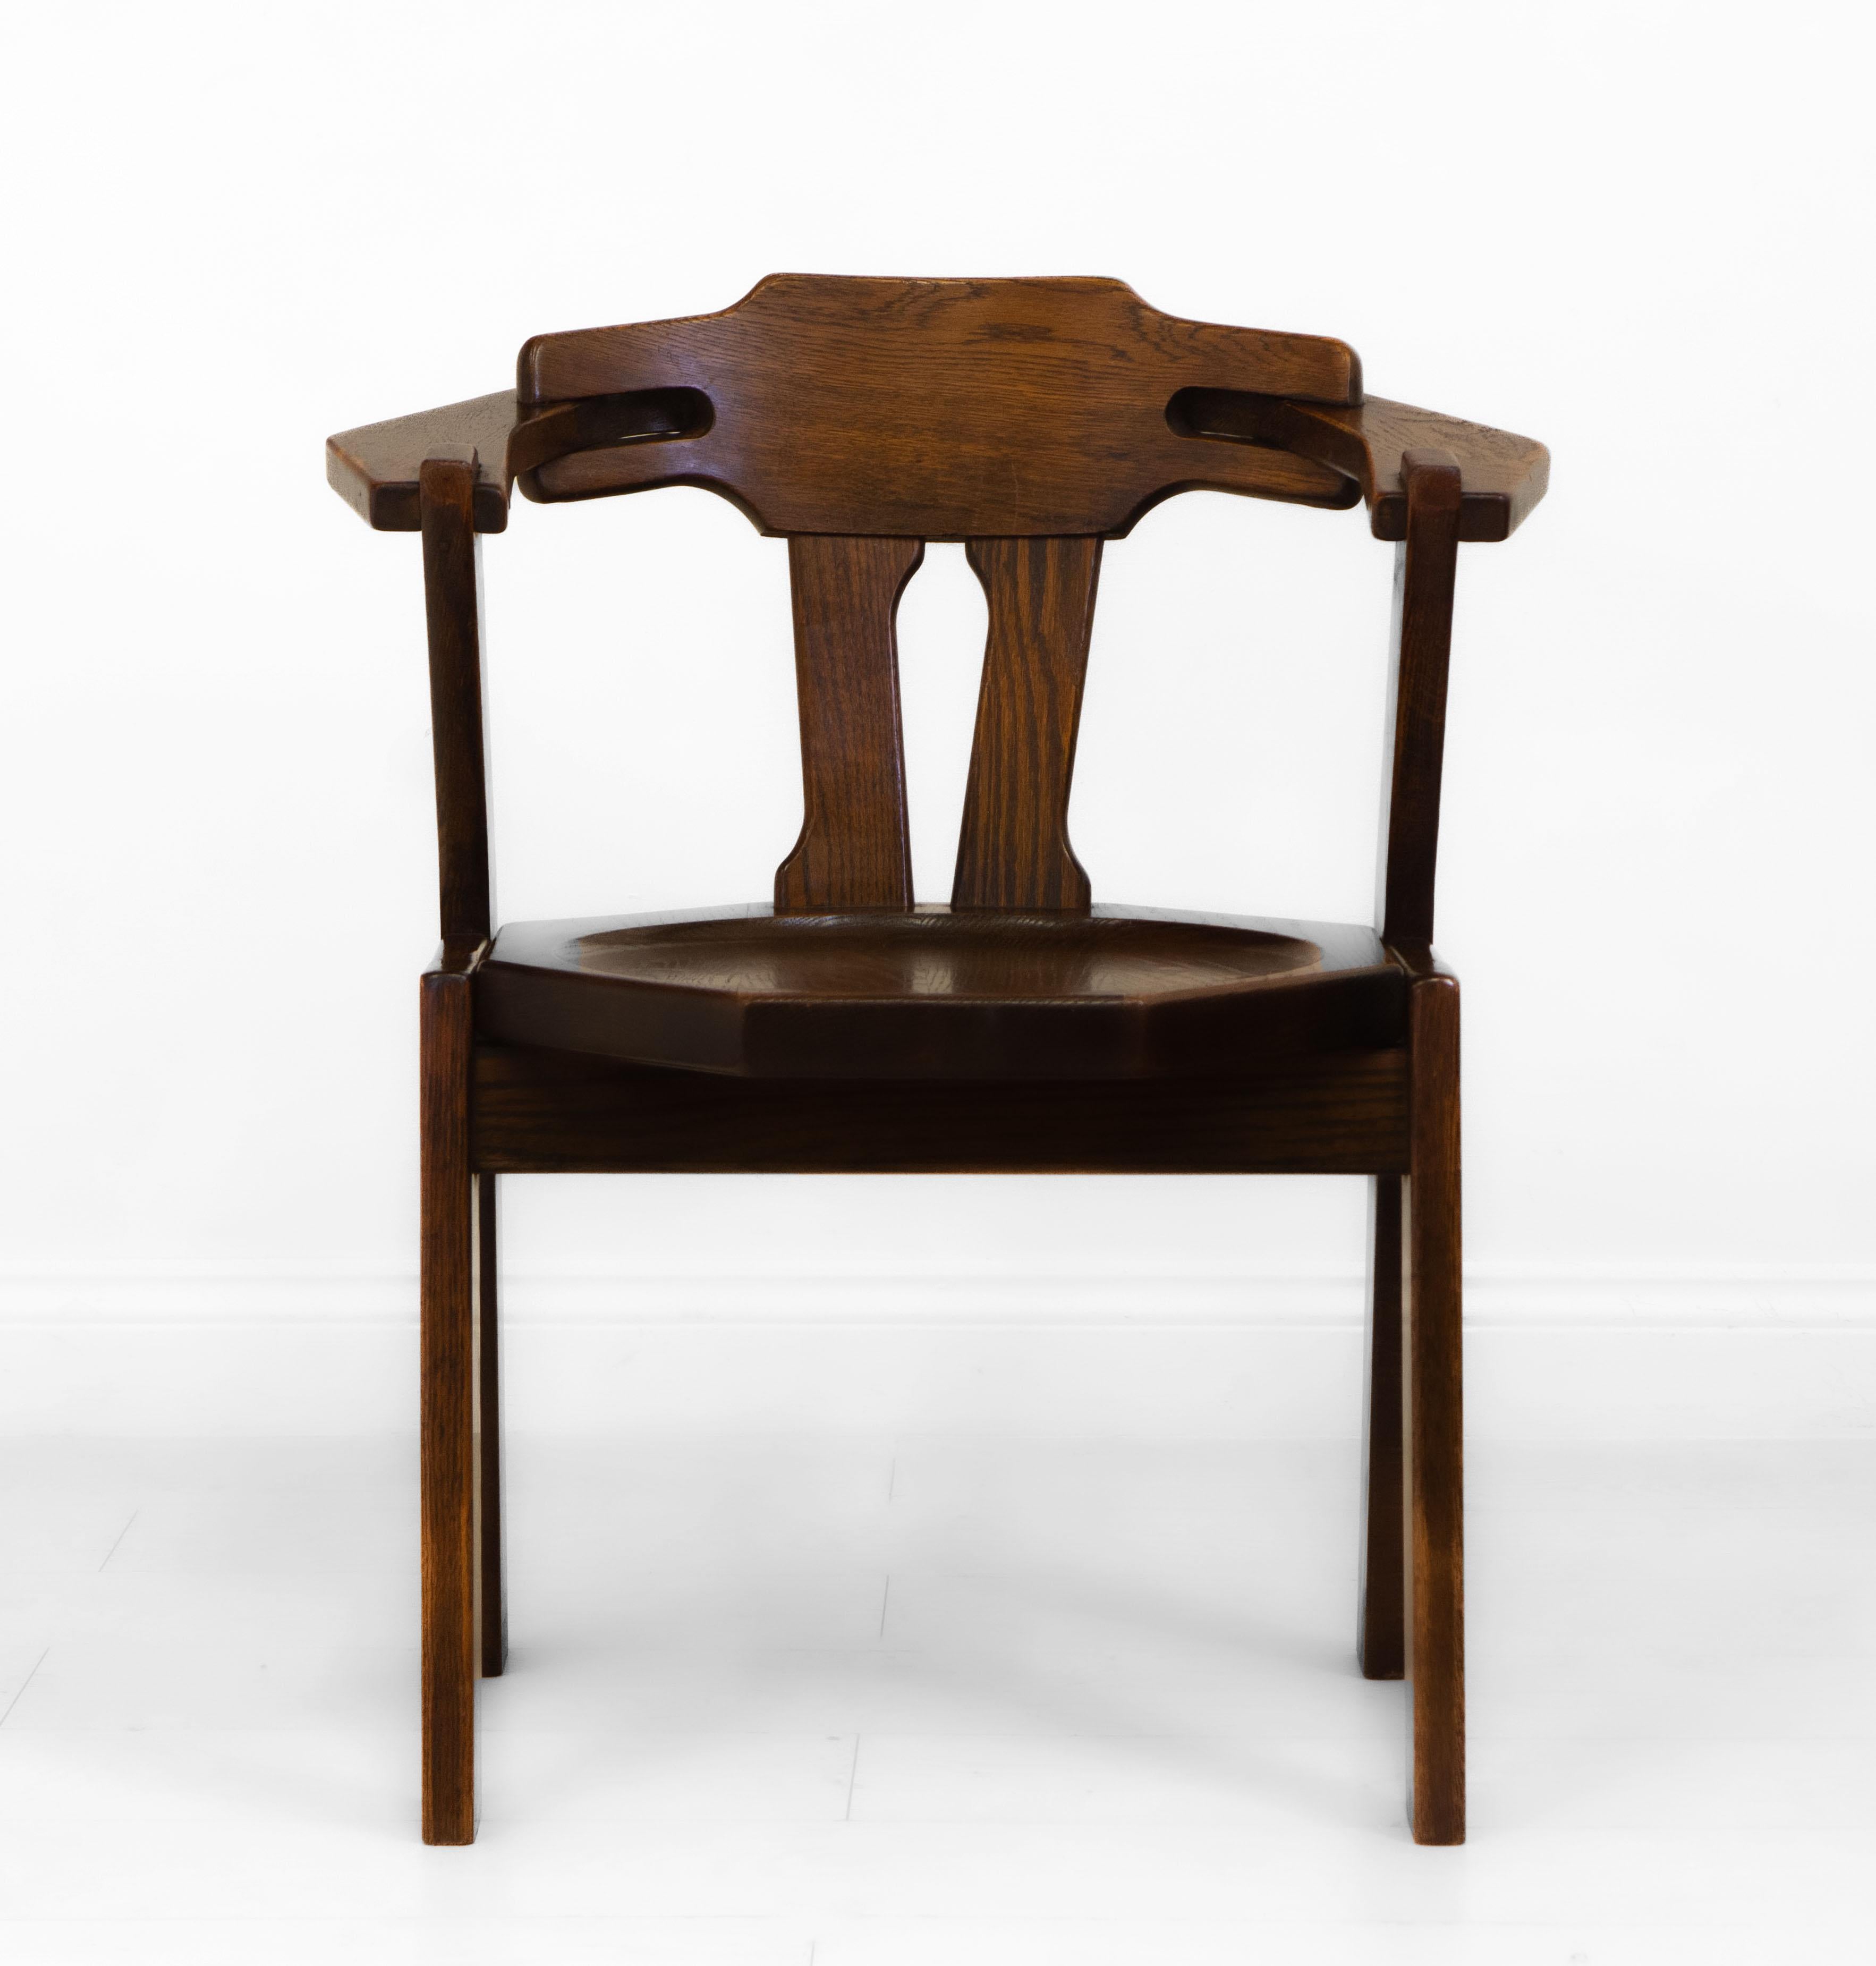 Ein brutalistischer Eichenholzstuhl für den Schreibtisch. Niederländische Länder - um 1970.

Dieser stilvolle Stuhl ist aus massivem Eichenholz gefertigt und in gutem Originalzustand. Es wurde gereinigt und gewachst. Es gibt einige Farbverluste an